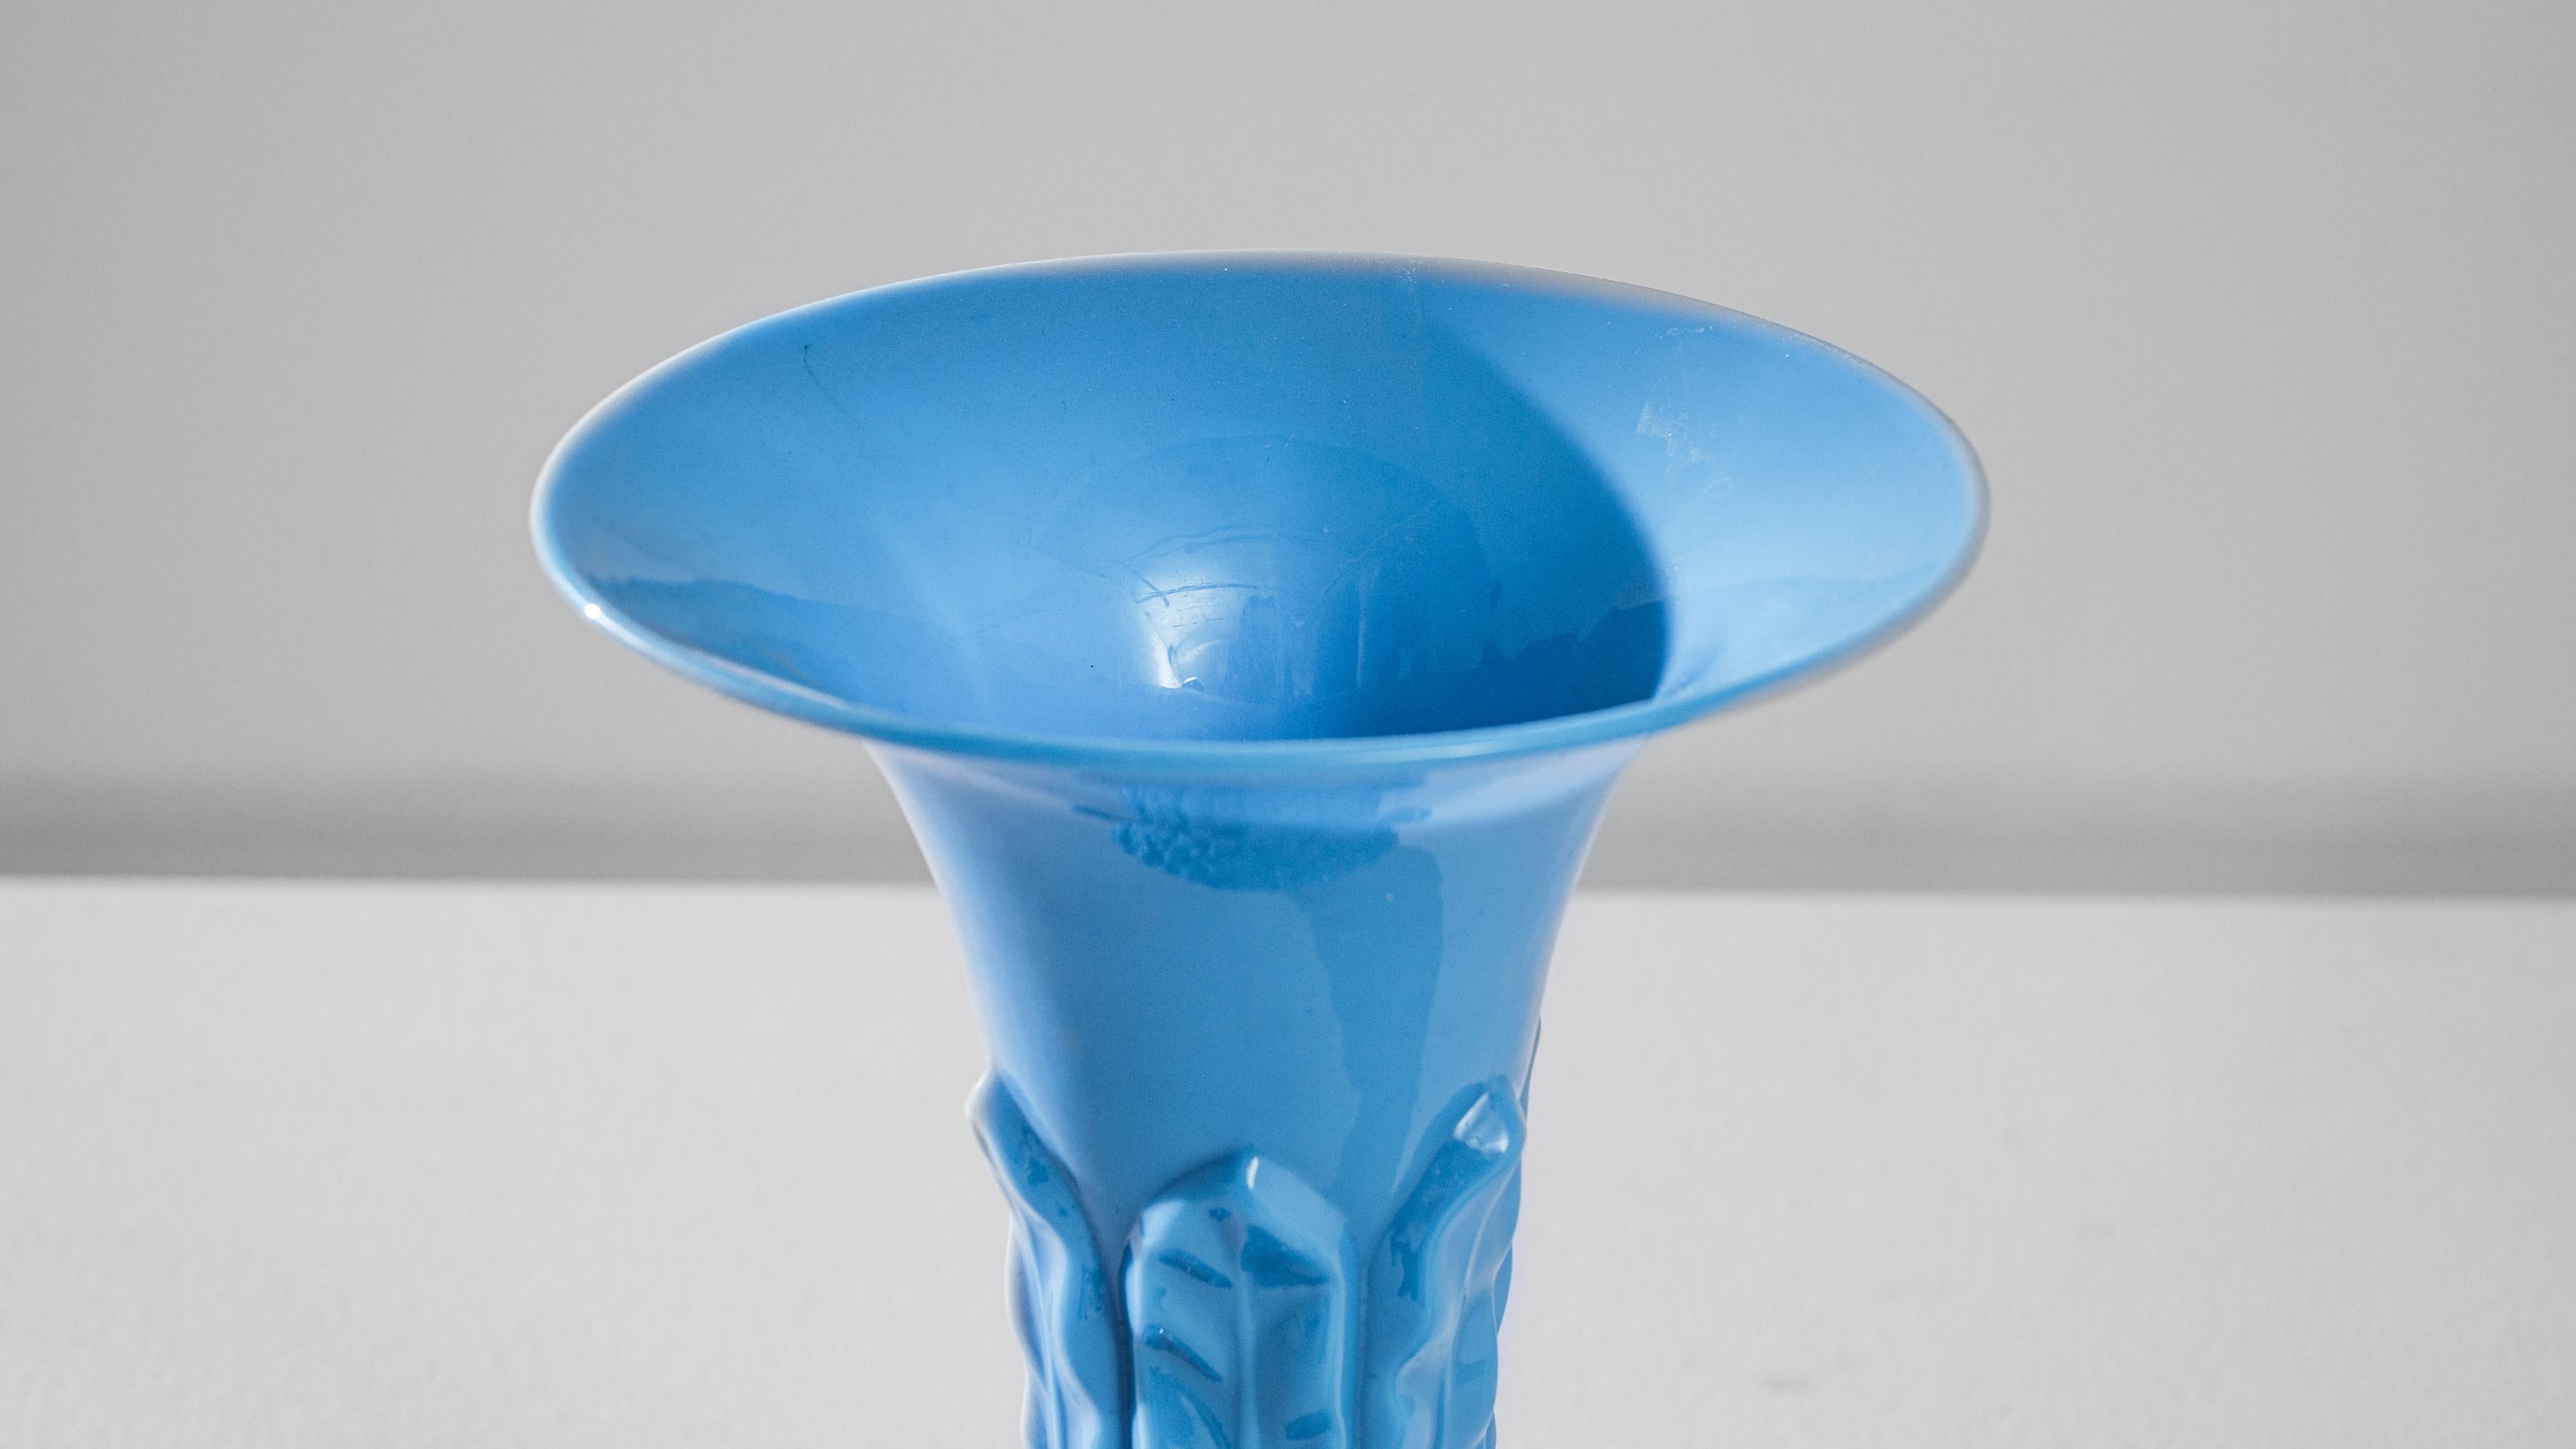 Ce vase captivant en verre bleu italien des années 1960 est une représentation étonnante de l'art et de l'artisanat de l'époque. Avec sa couleur bleu ciel vive et sa texture unique, le vase a une présence frappante qui attire l'attention. La moitié